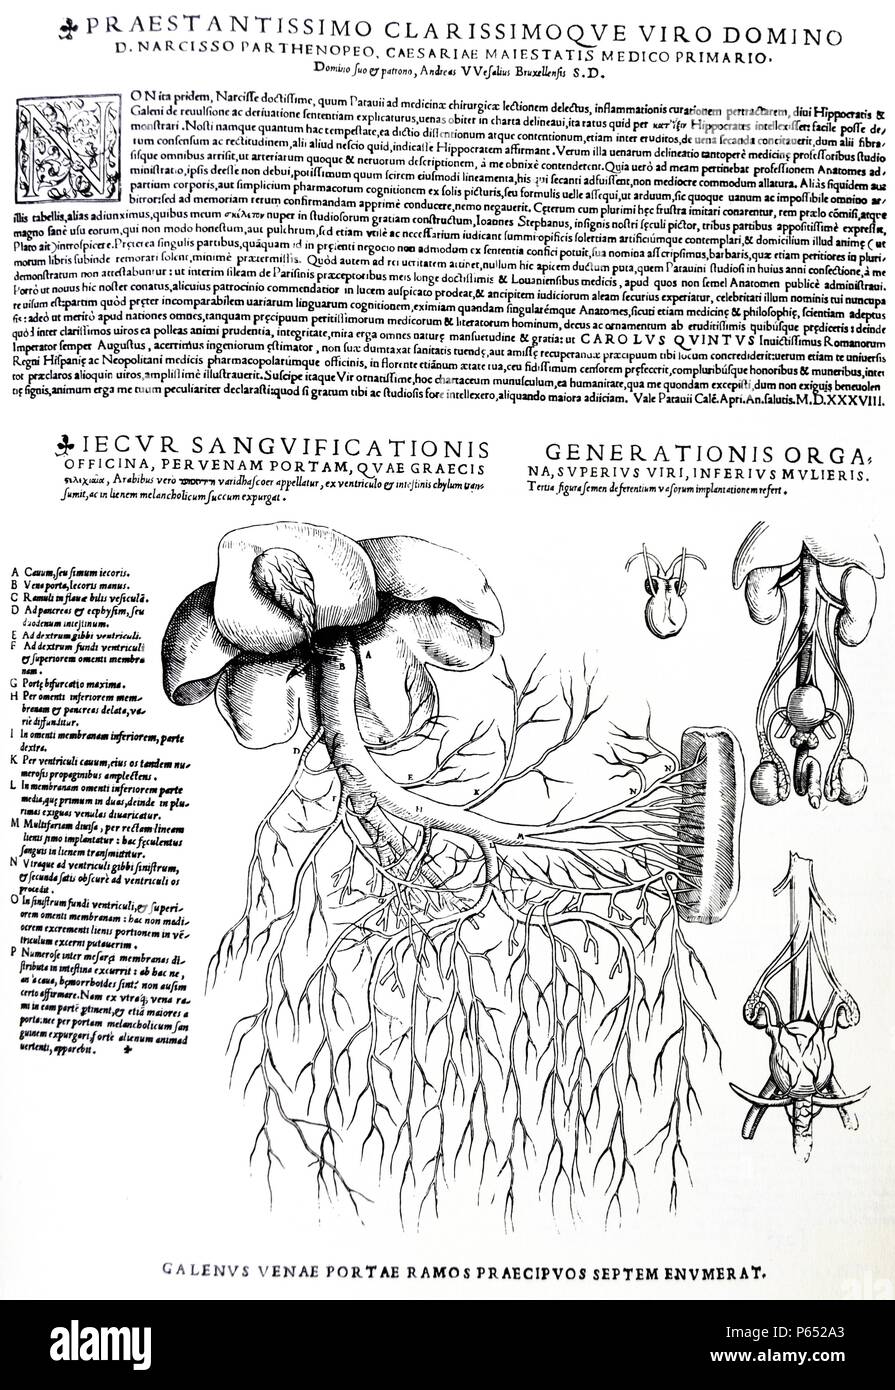 Die Platten aus dem Inbegriff der De Humani Corporis Fabrica von Andreas Vesalius (1514-1564) Platte 89 - Darstellung der männlichen und weiblichen Fortpflanzung Systeme (rechts); Darstellung der Leber mit venösen System (links). Stockfoto